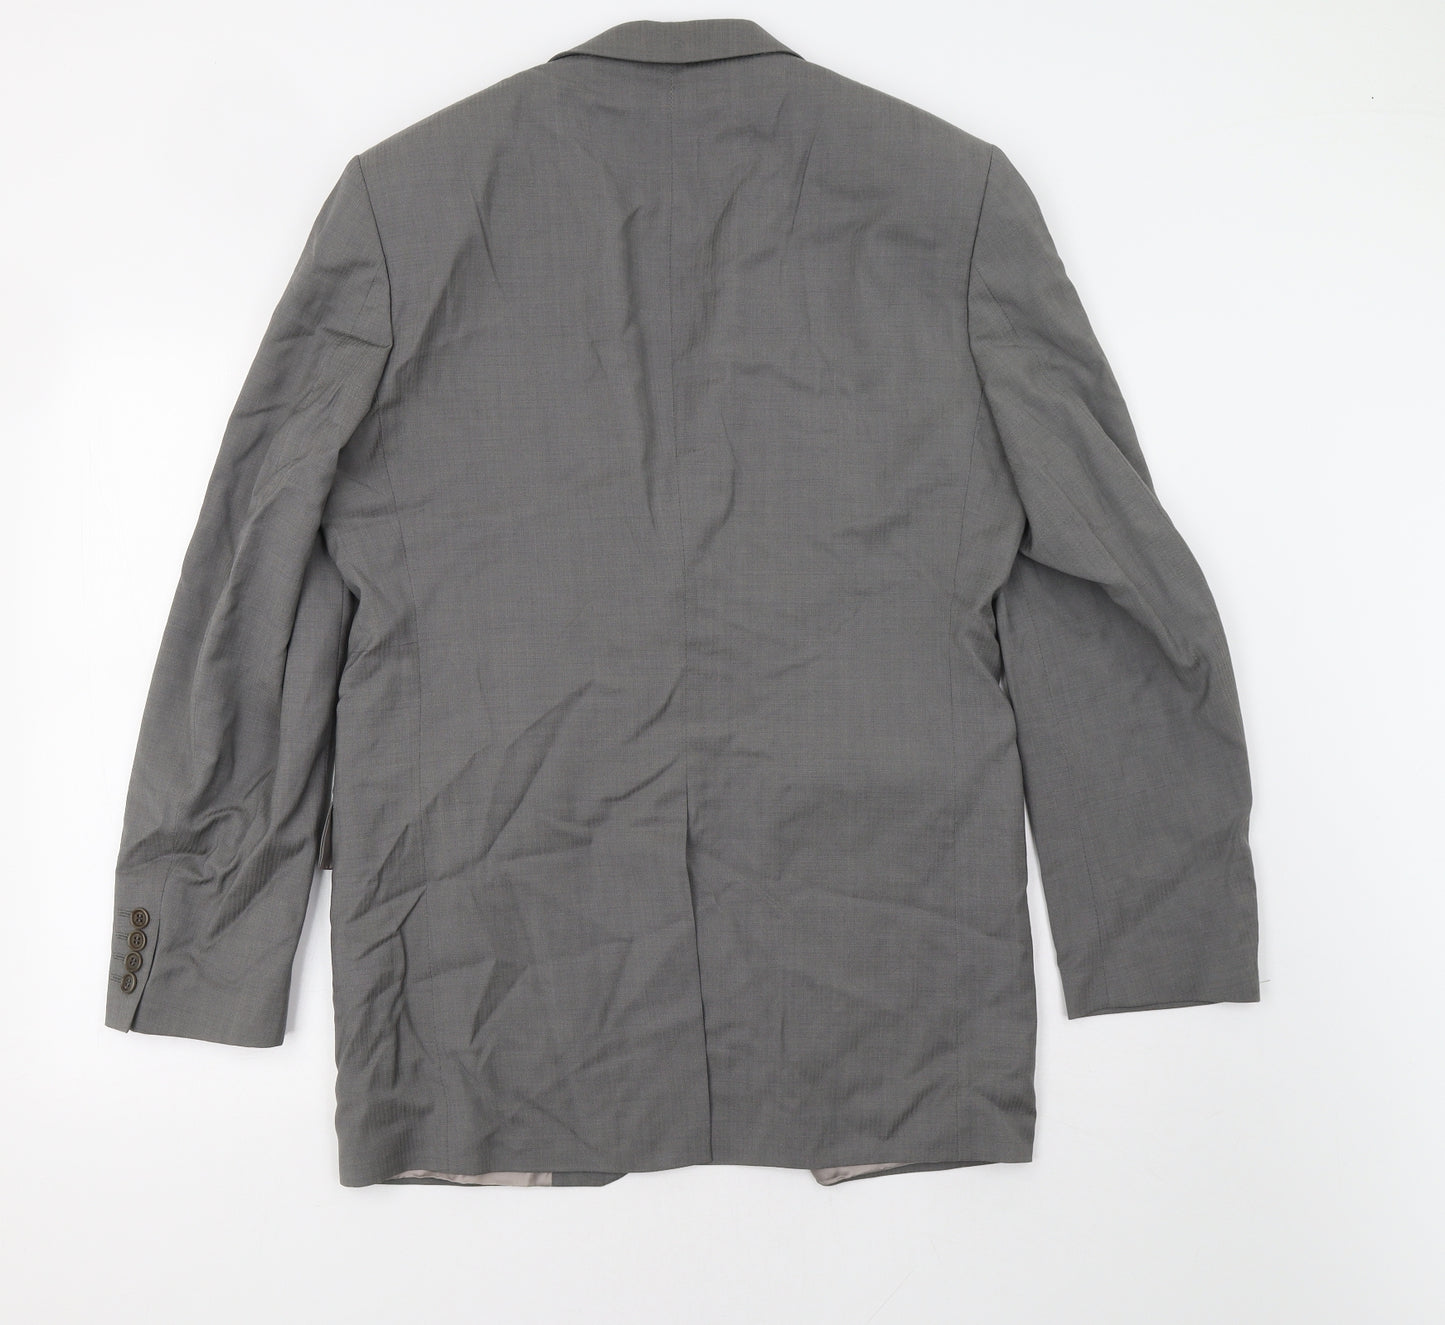 Preworn Mens Grey   Jacket Blazer Size 42